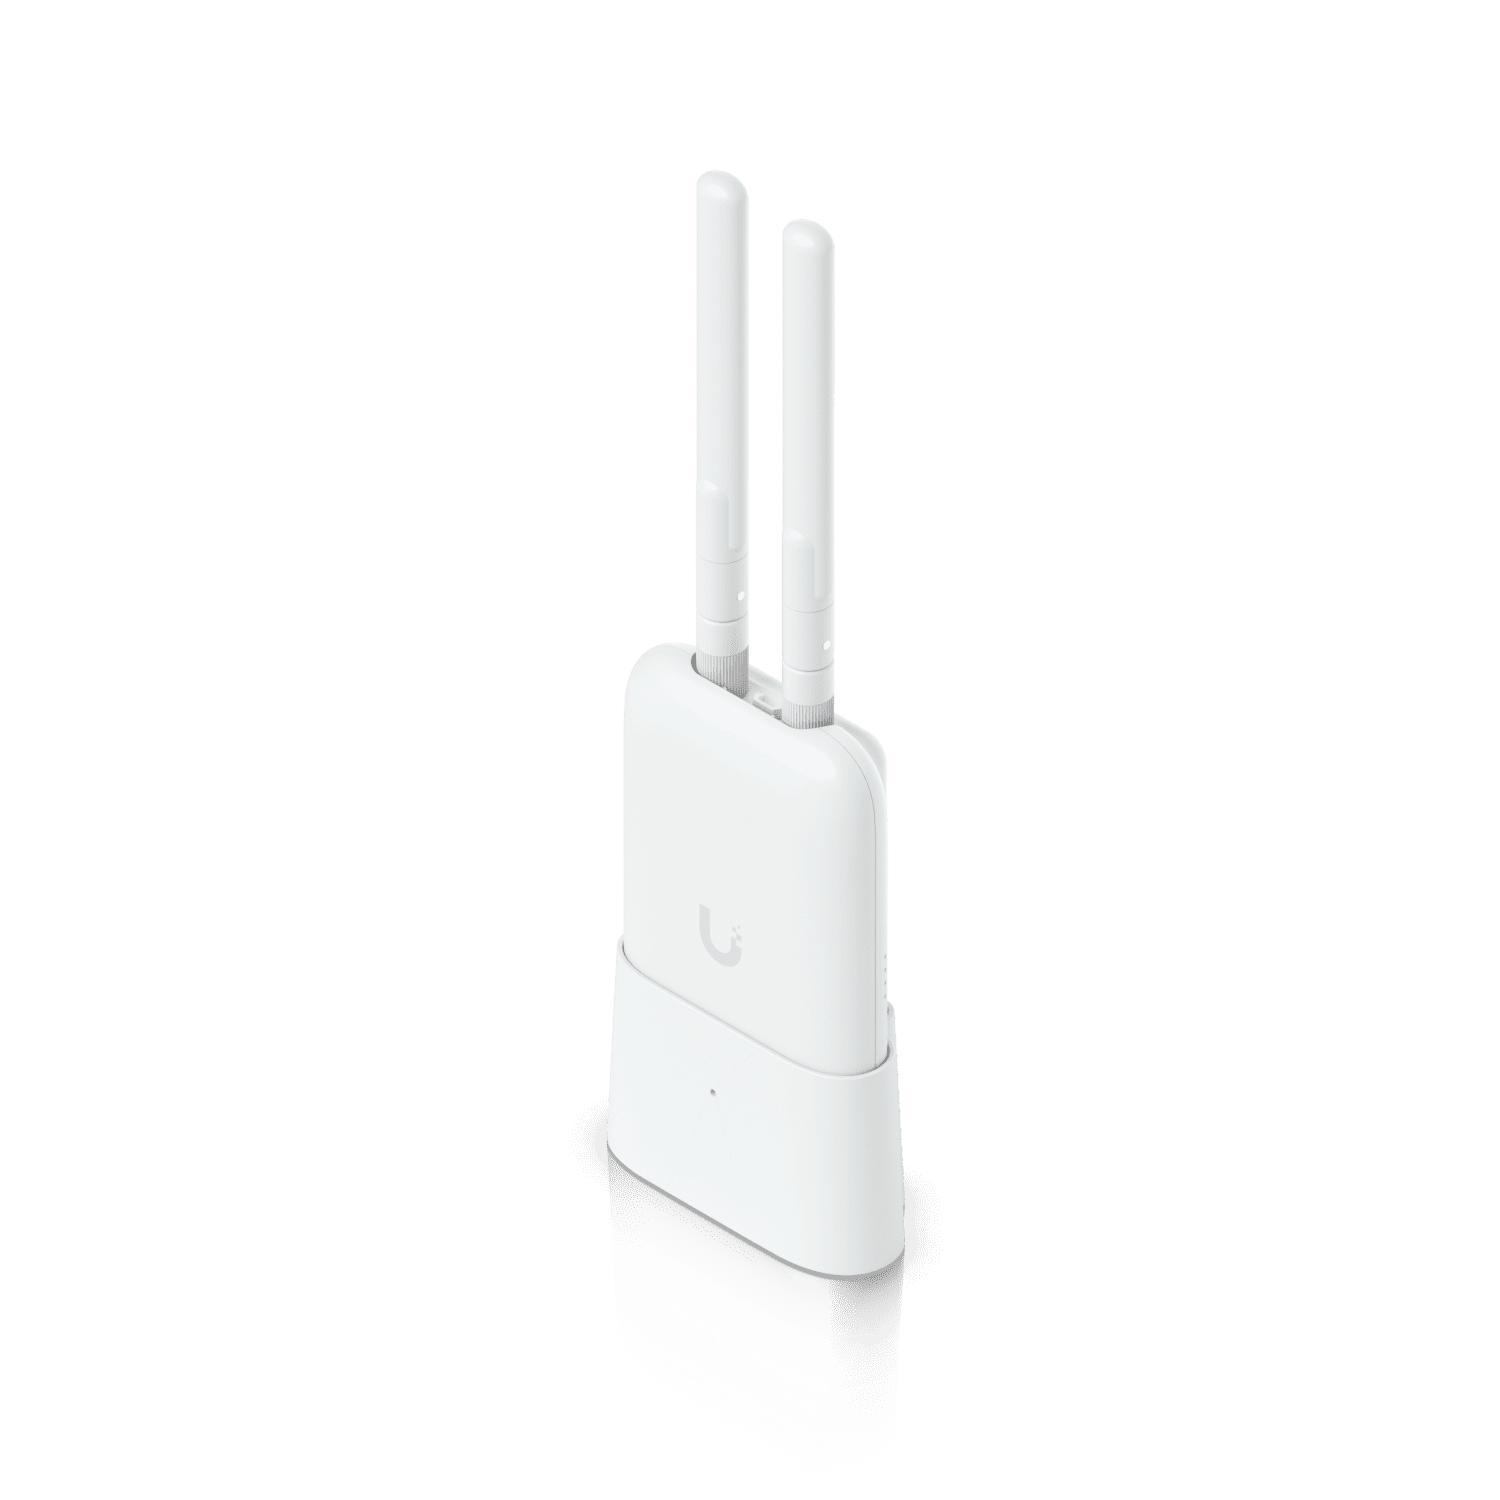 Omni Antenna & Desktop Stand Kit